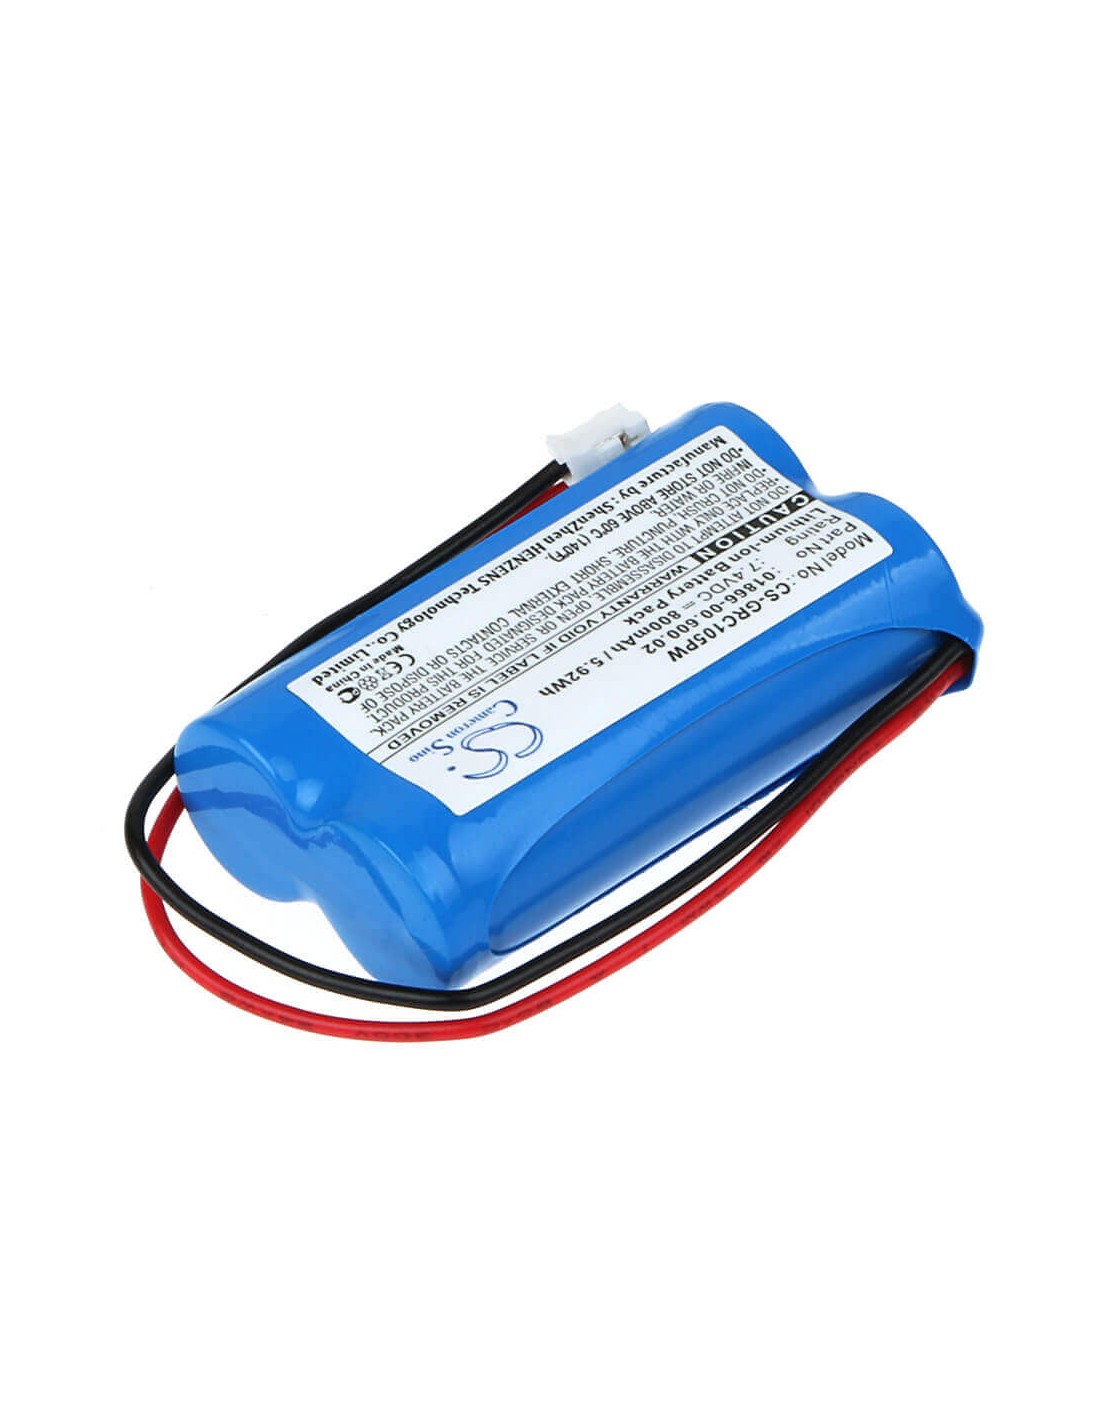 Battery for Gardena C1060 Plus Solar 7.4V, 800mAh - 5.92Wh